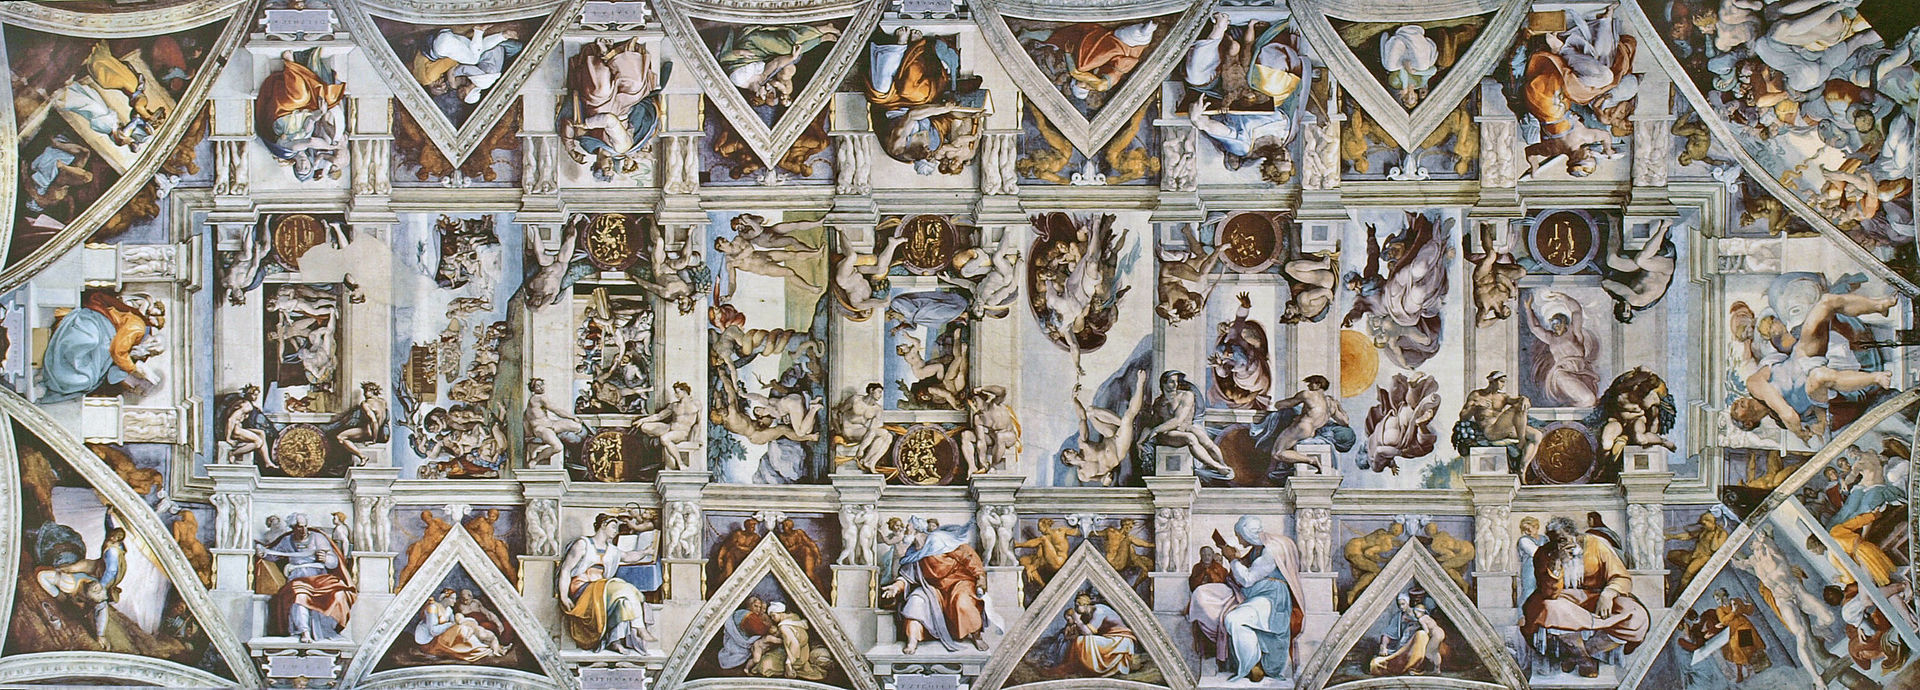 Bóveda de la Capilla Sixtina (1508-12), pintada por Miguel Ángel